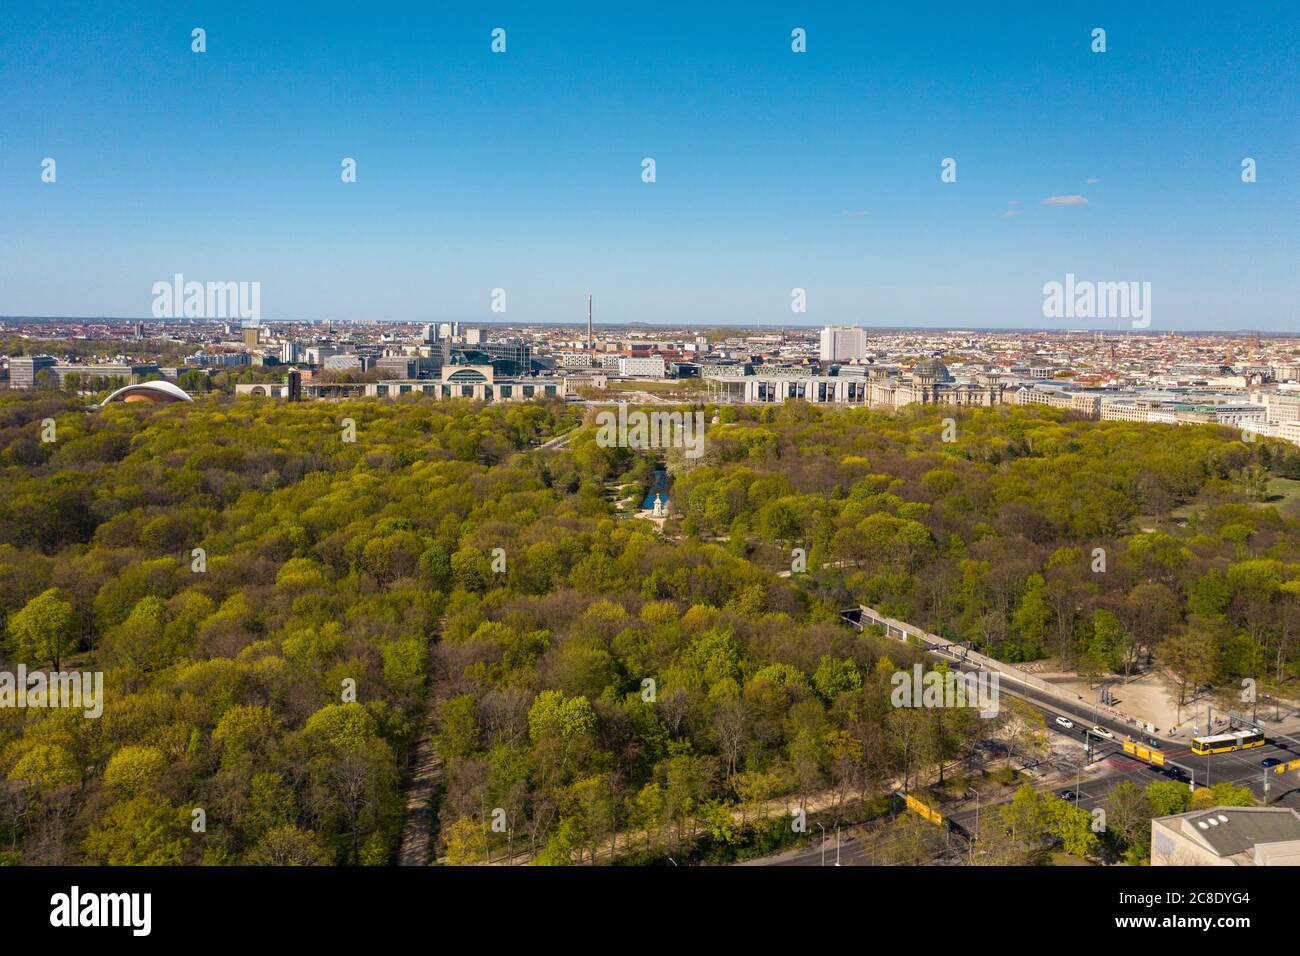 Germany, Berlin, Aerial view of Tiergarten park Stock Photo